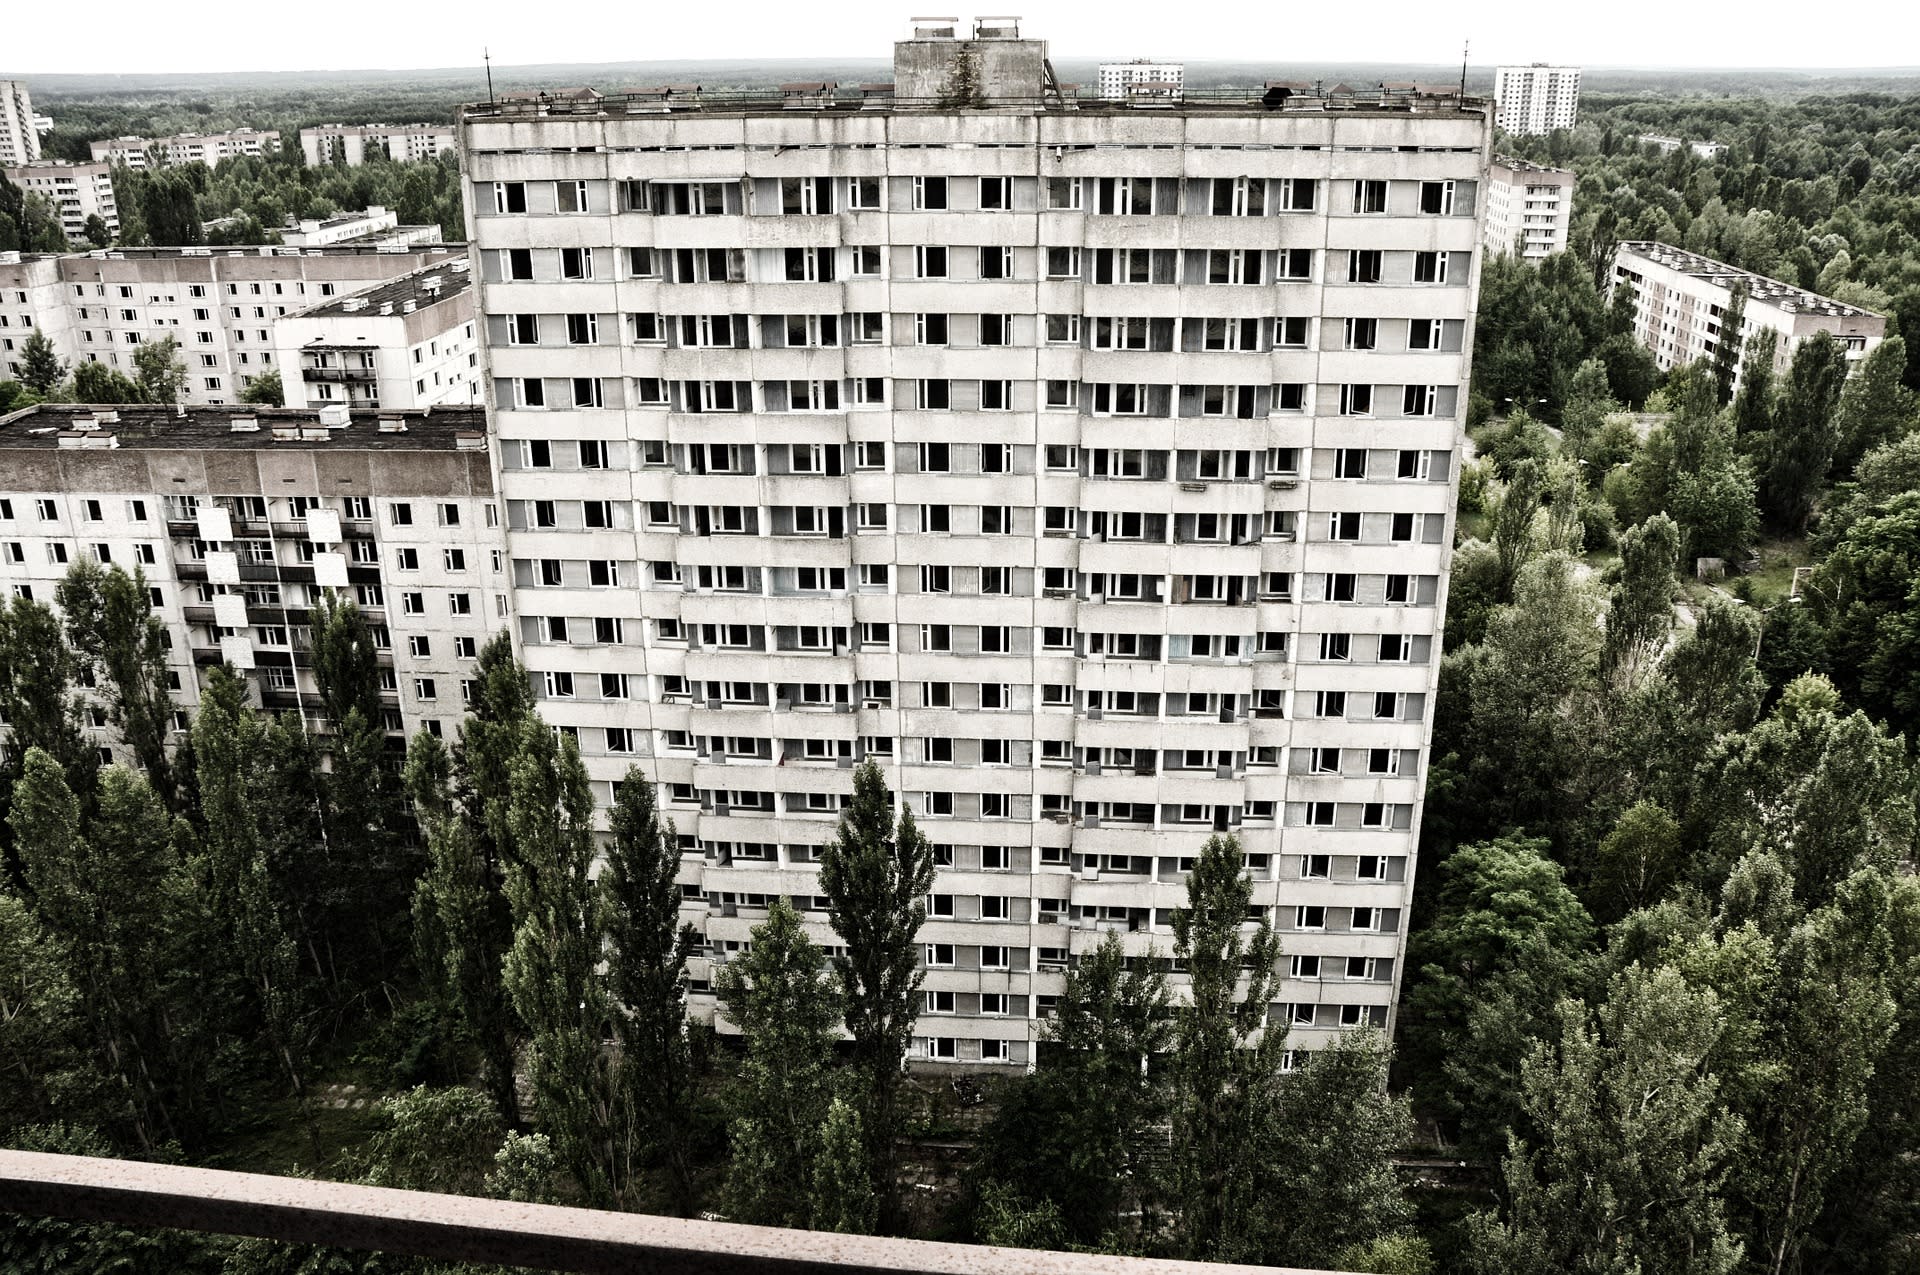 V Pripjati žilo v okamžiku výbuchu jaderné elektrárny Černobyl kolem 50 tisíc lidí, dnes je to město duchů